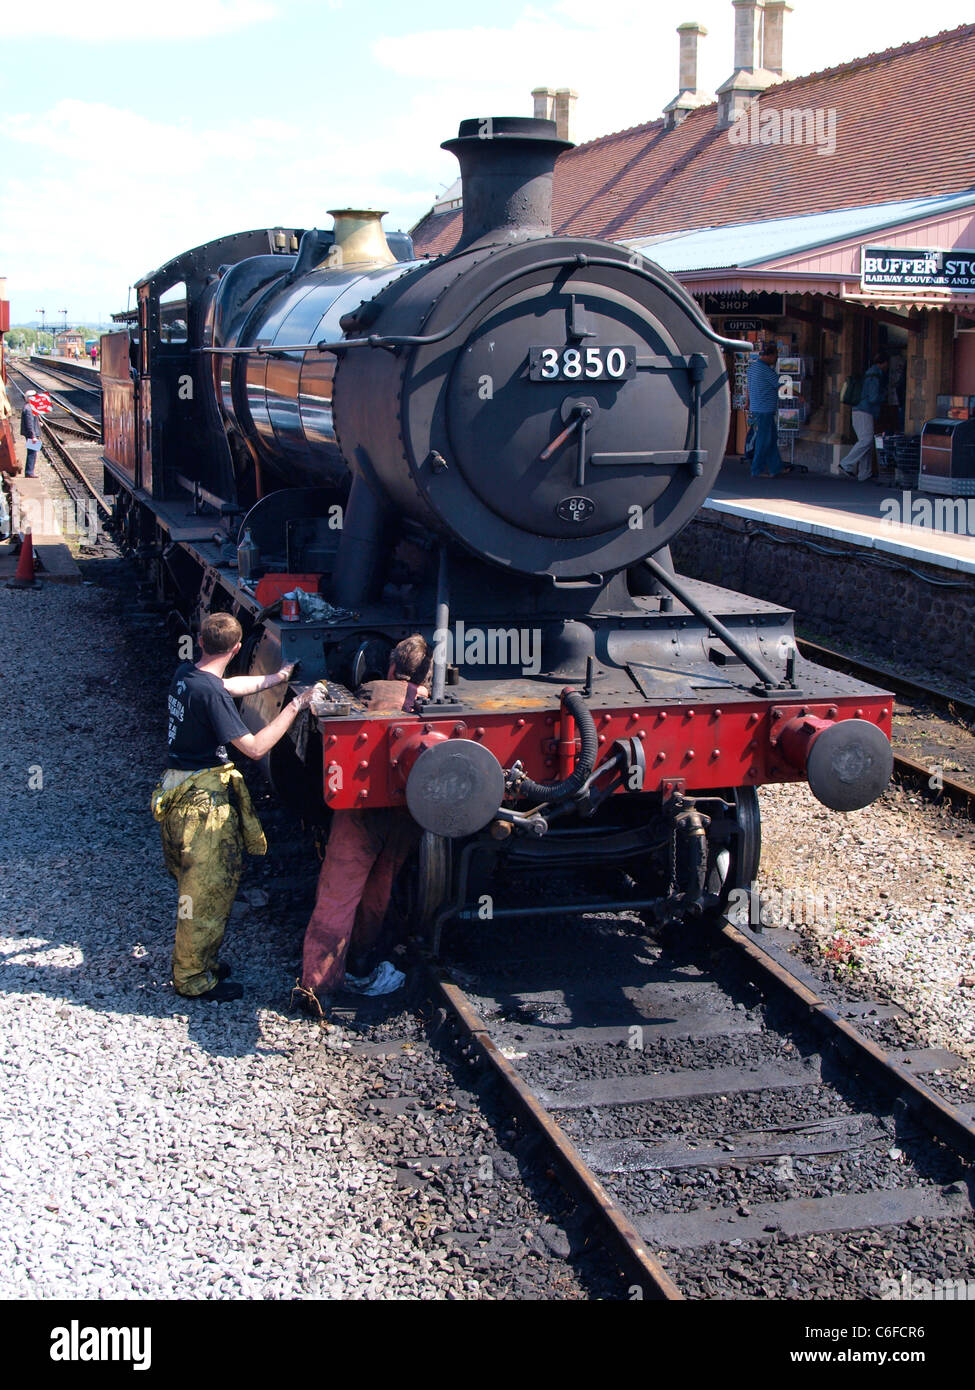 Deux ingénieurs travaillant sur un train à vapeur, Minehead, Somerset, UK Banque D'Images